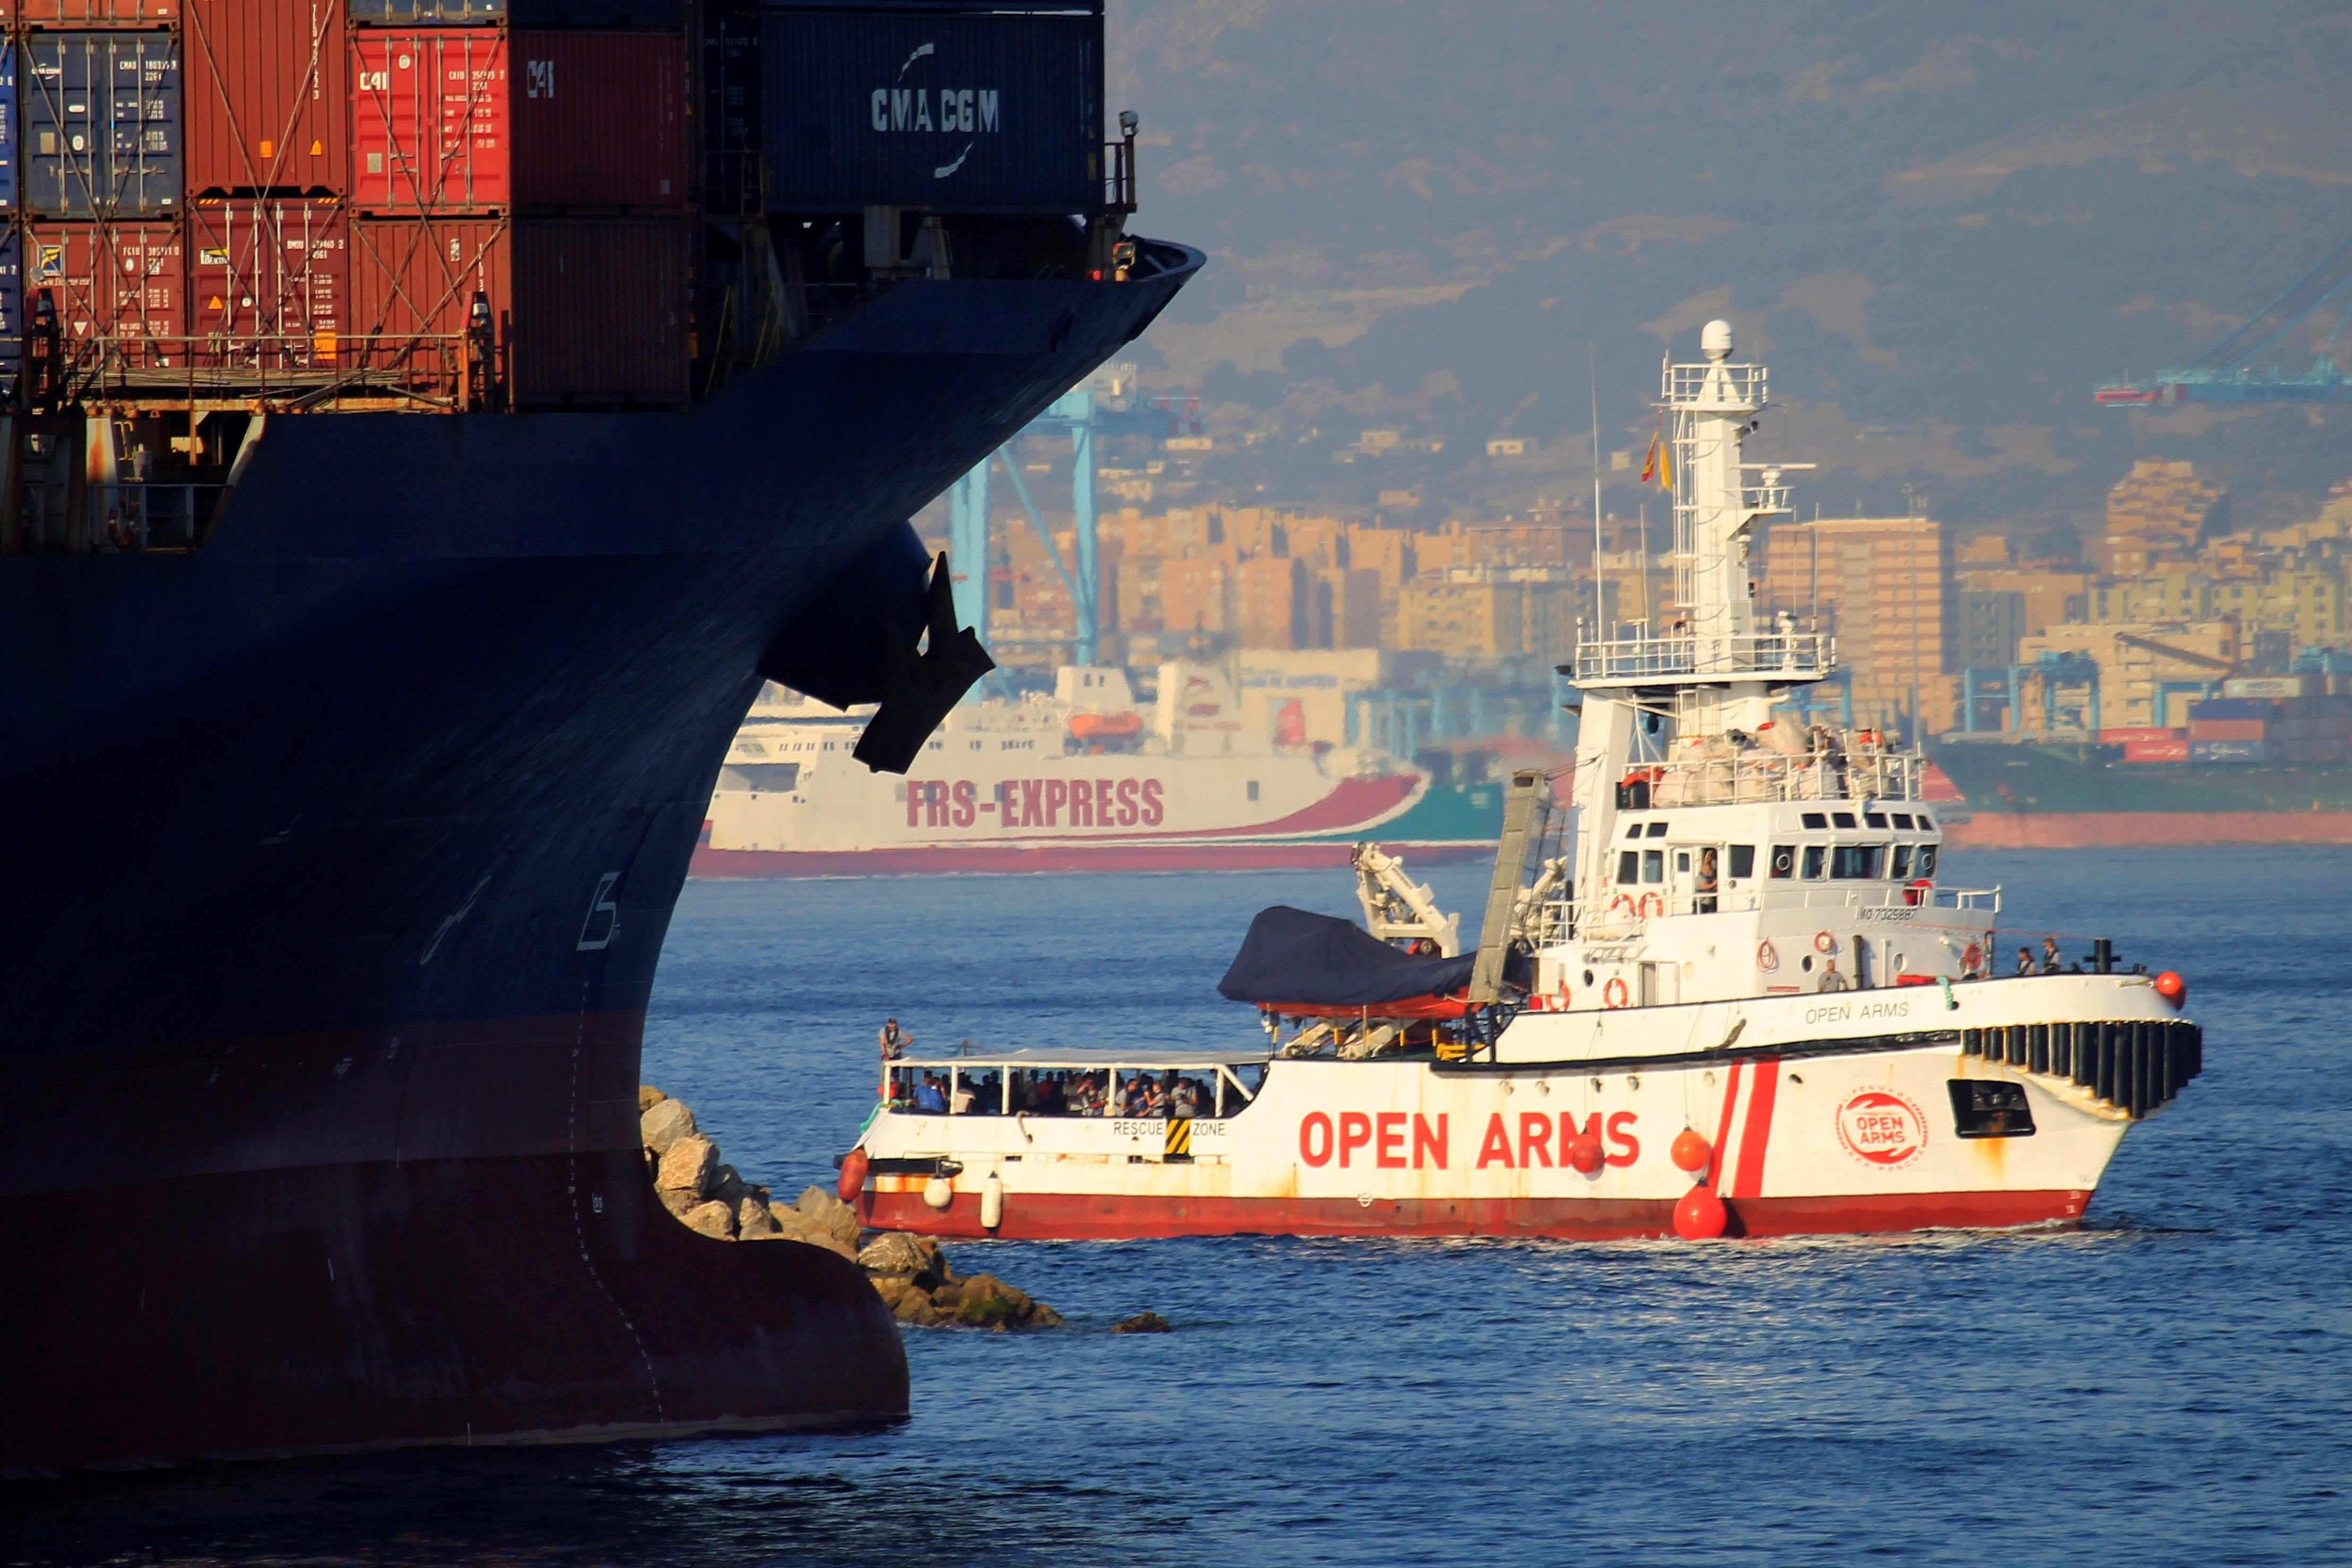 VÍDEO | El Open Arms sigue esperando desembarcar con 121 personas a bordo